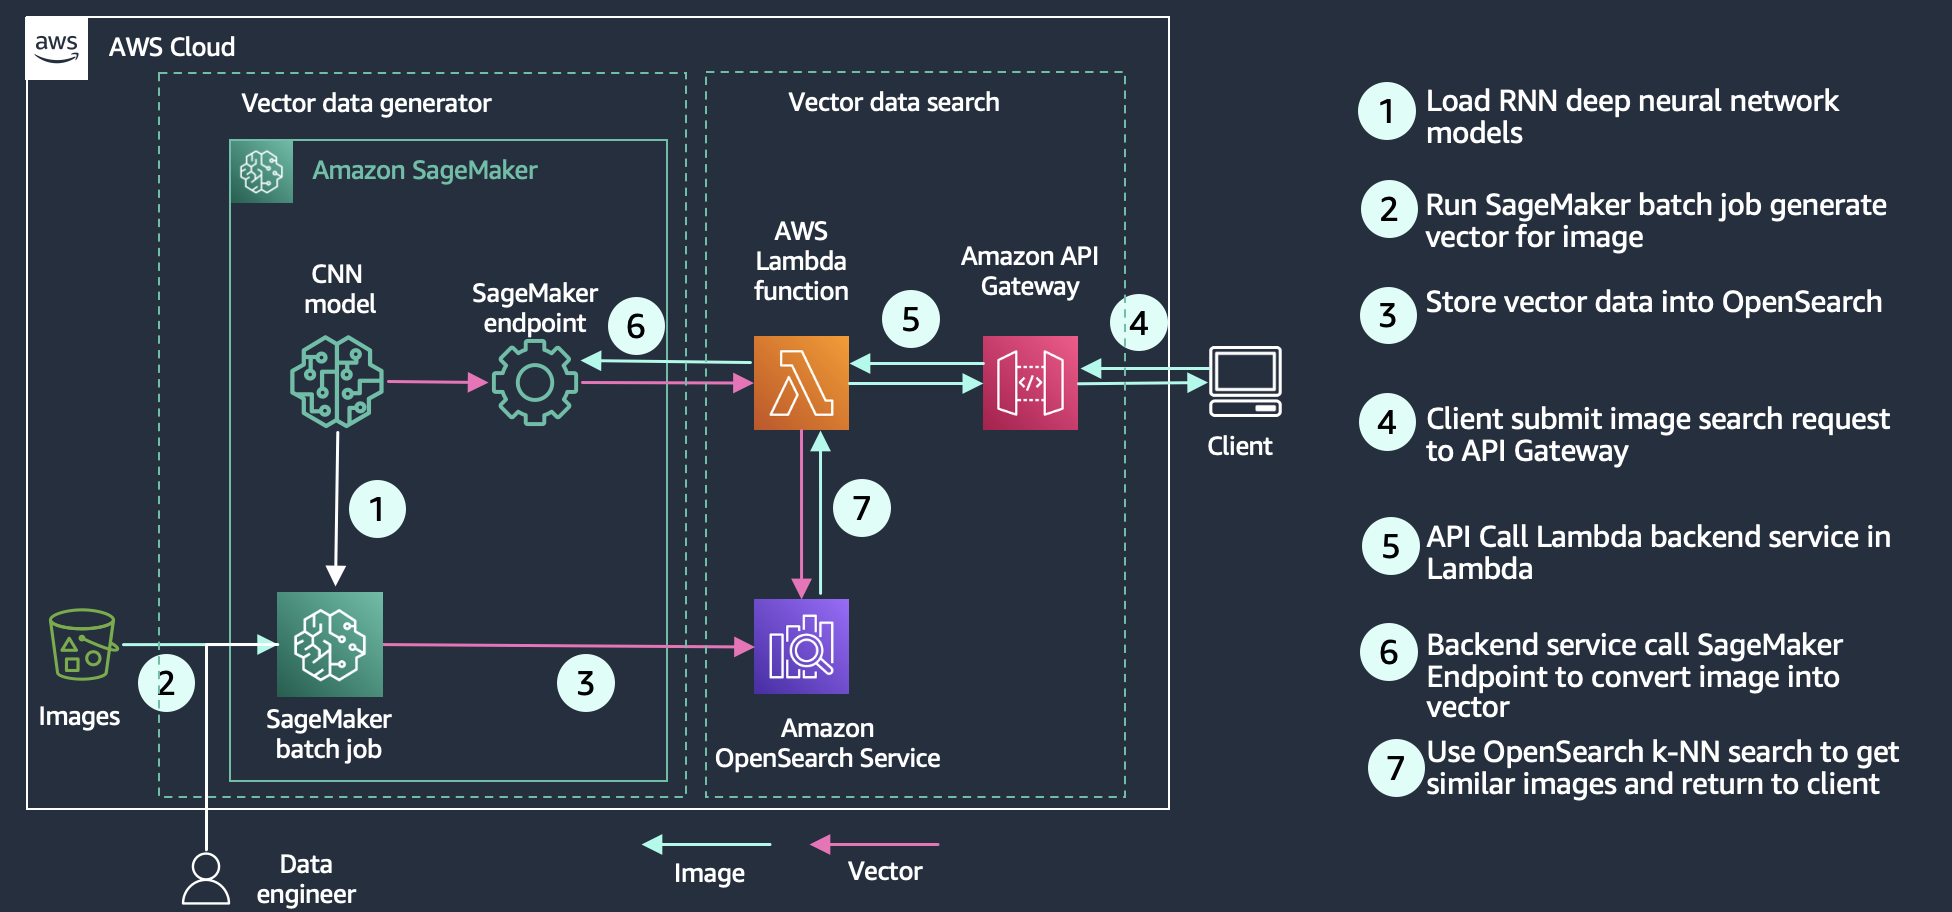 مخطط معماري يوضح كيفية استخدام Amazon OpenSearch Service للبحث في الوسائط الغنية مثل الصور ومقاطع الفيديو والملفات الصوتية